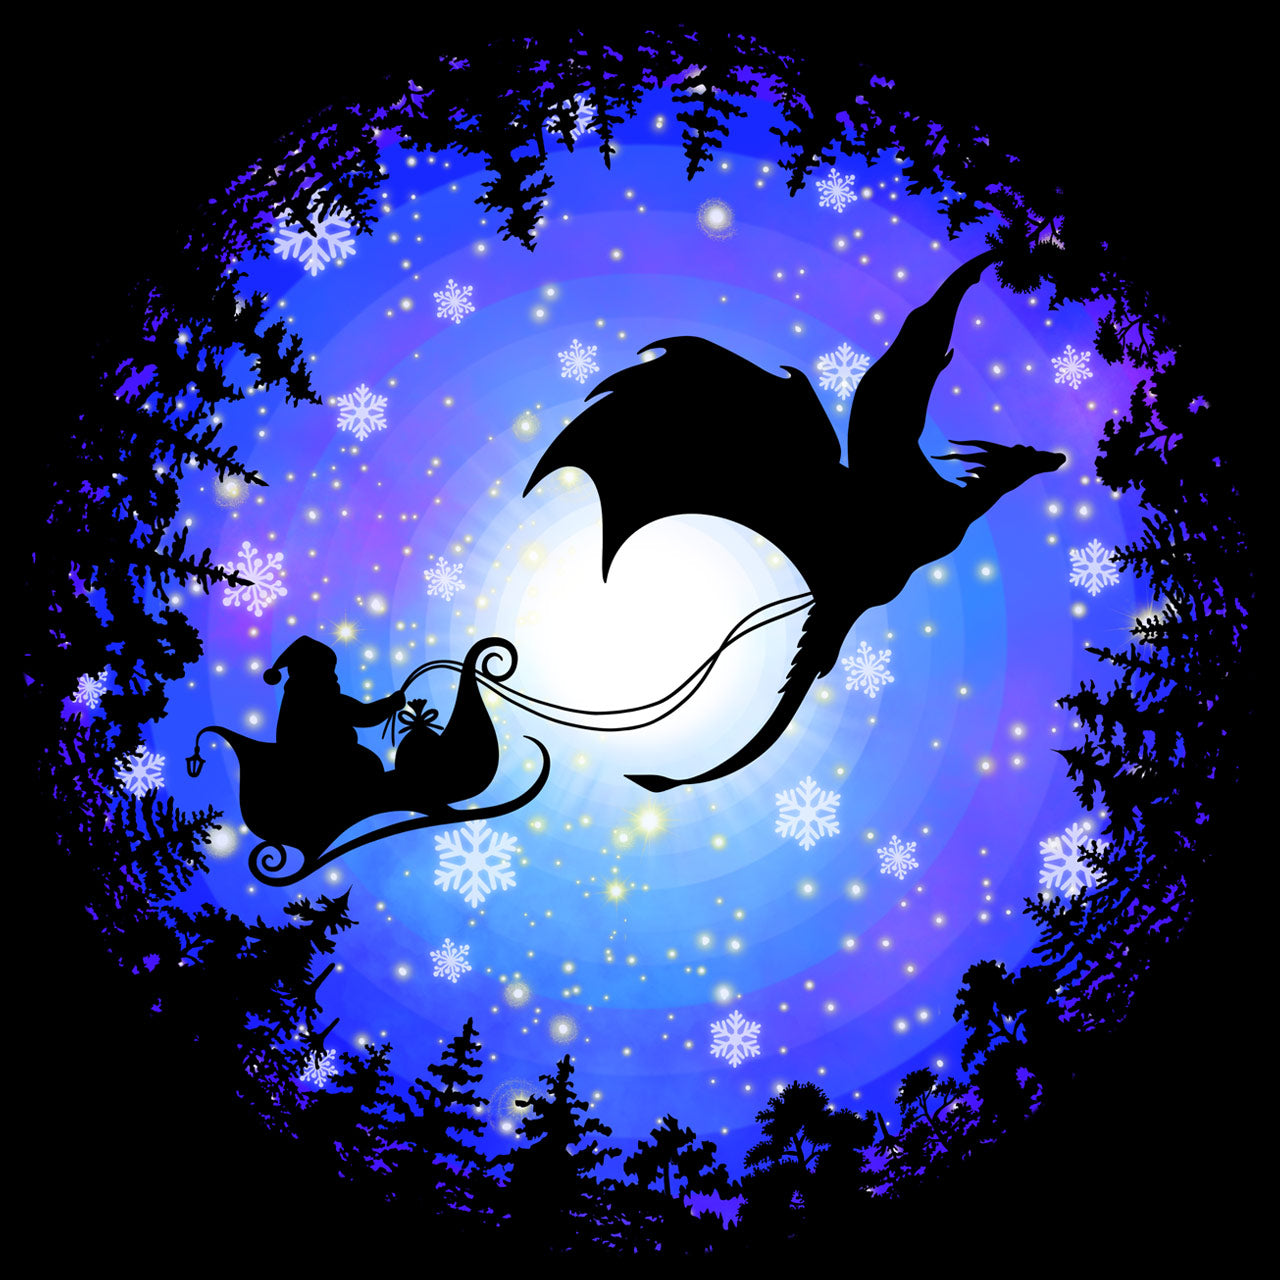 Santa's Dragon Christmas Delivery |HolidayPHORIA| Christmas and Xmas Holiday Hoodie